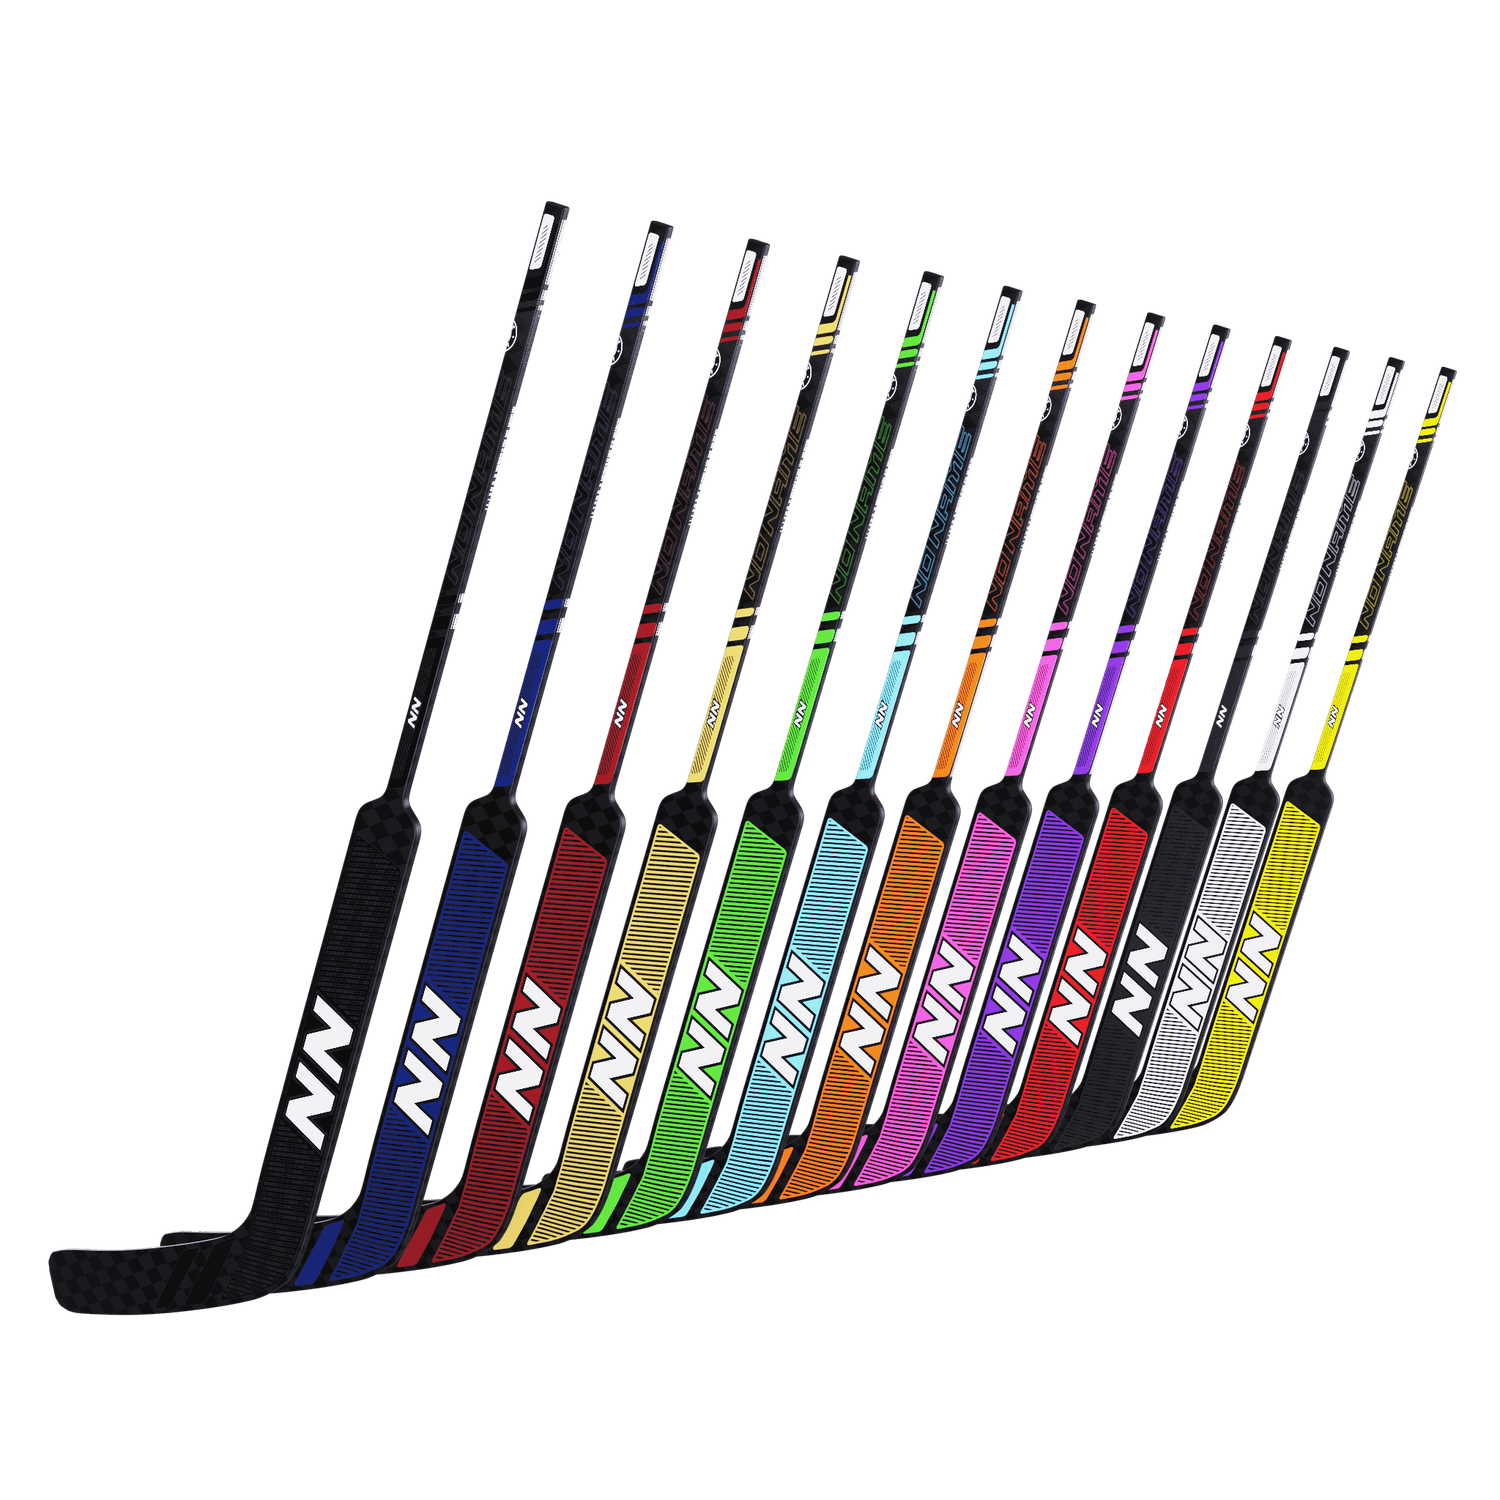 No Name Hockey Ltd. Hockey Sticks Custom Goal Stick